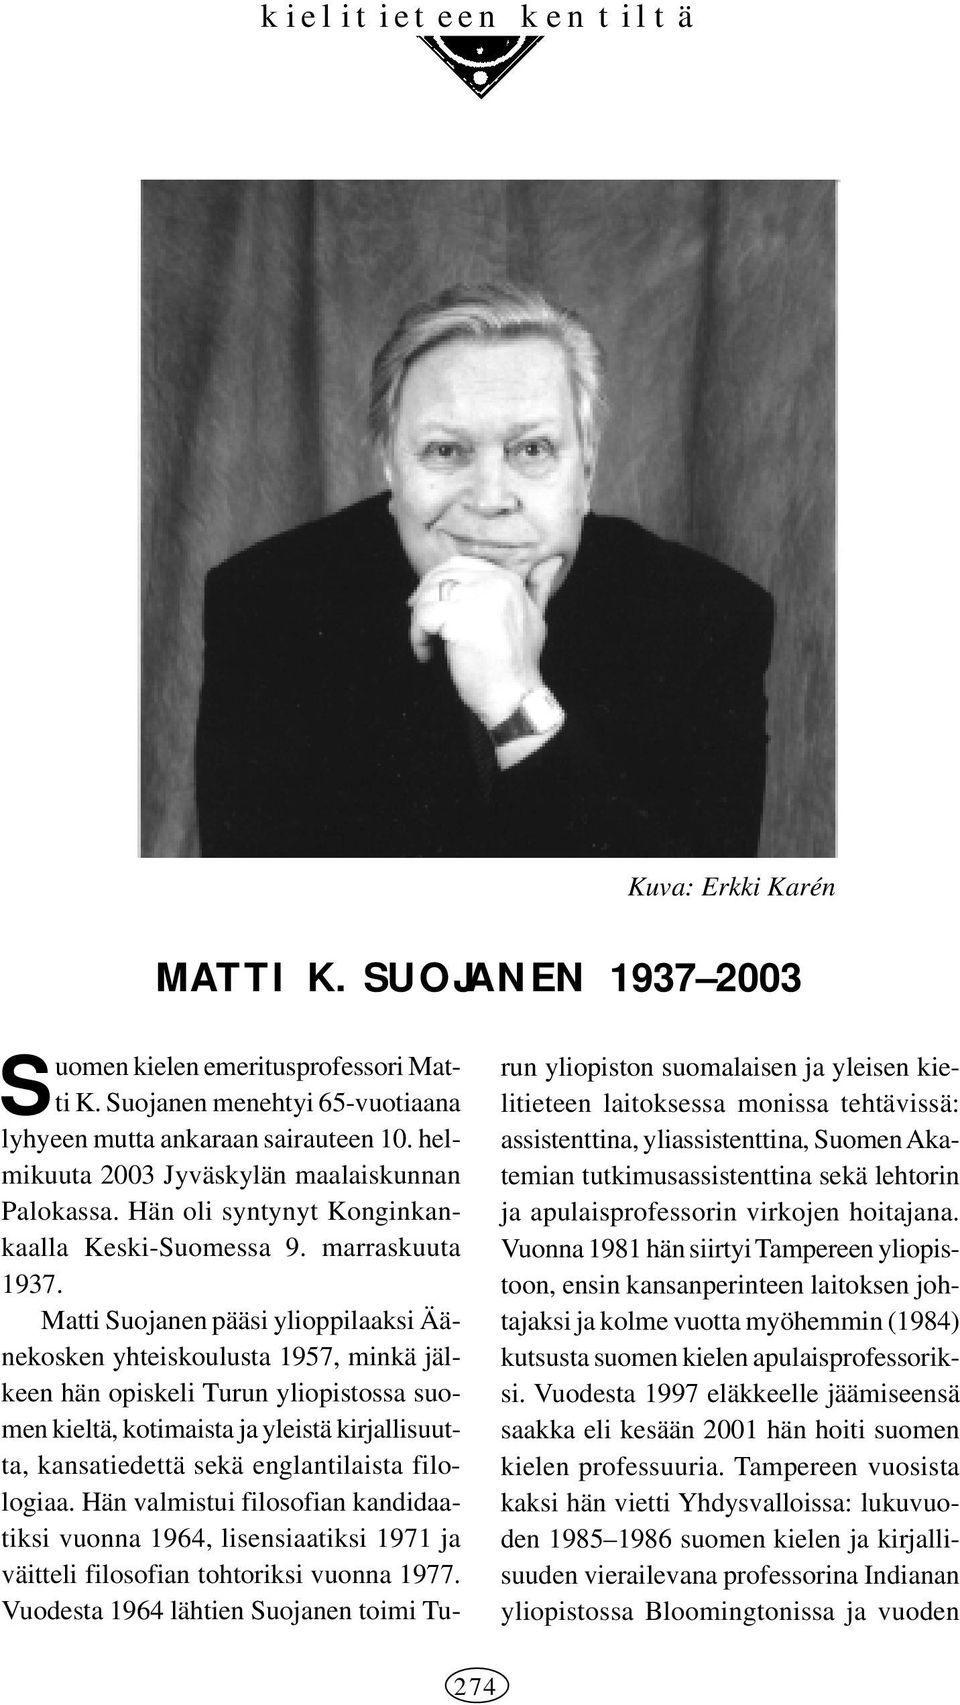 Matti Suojanen pääsi ylioppilaaksi Äänekosken yhteiskoulusta 1957, minkä jälkeen hän opiskeli Turun yliopistossa suomen kieltä, kotimaista ja yleistä kirjallisuutta, kansatiedettä sekä englantilaista